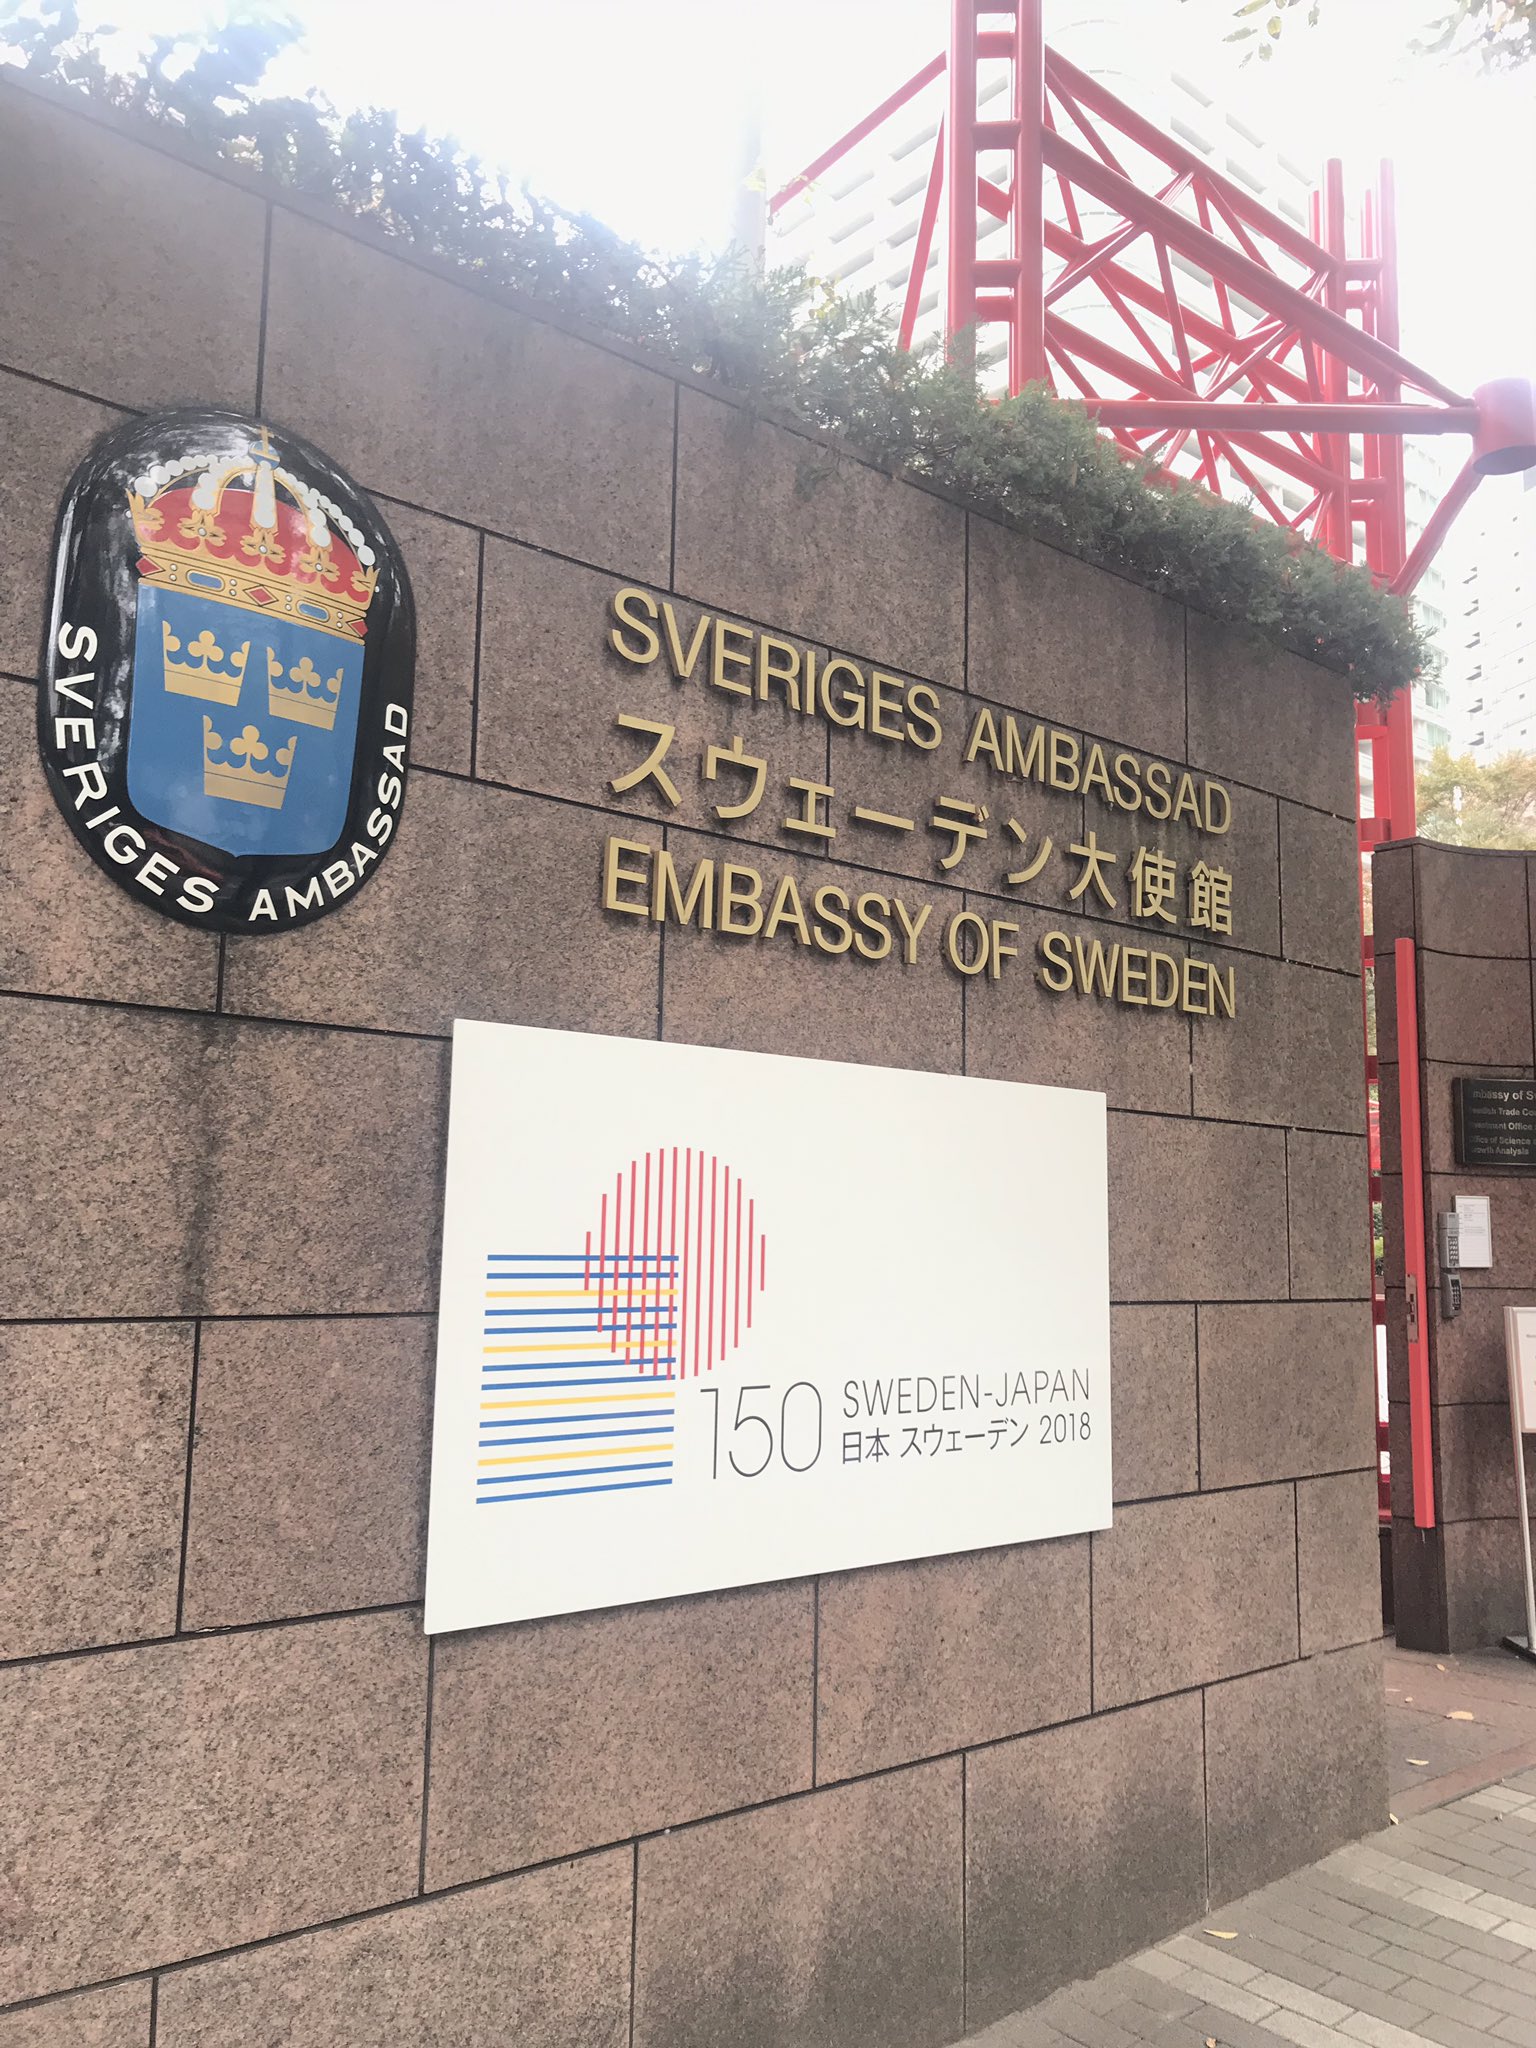 北欧フィーカ 今日は東京 スウェーデン大使館へ 11 30まで開催中の スウェーデンの漫画を世界へ オーサ イェークストロム X キム アンダーソン の展示会を見てきました 北欧女子オーサが見つけた日本の不思議 で人気の